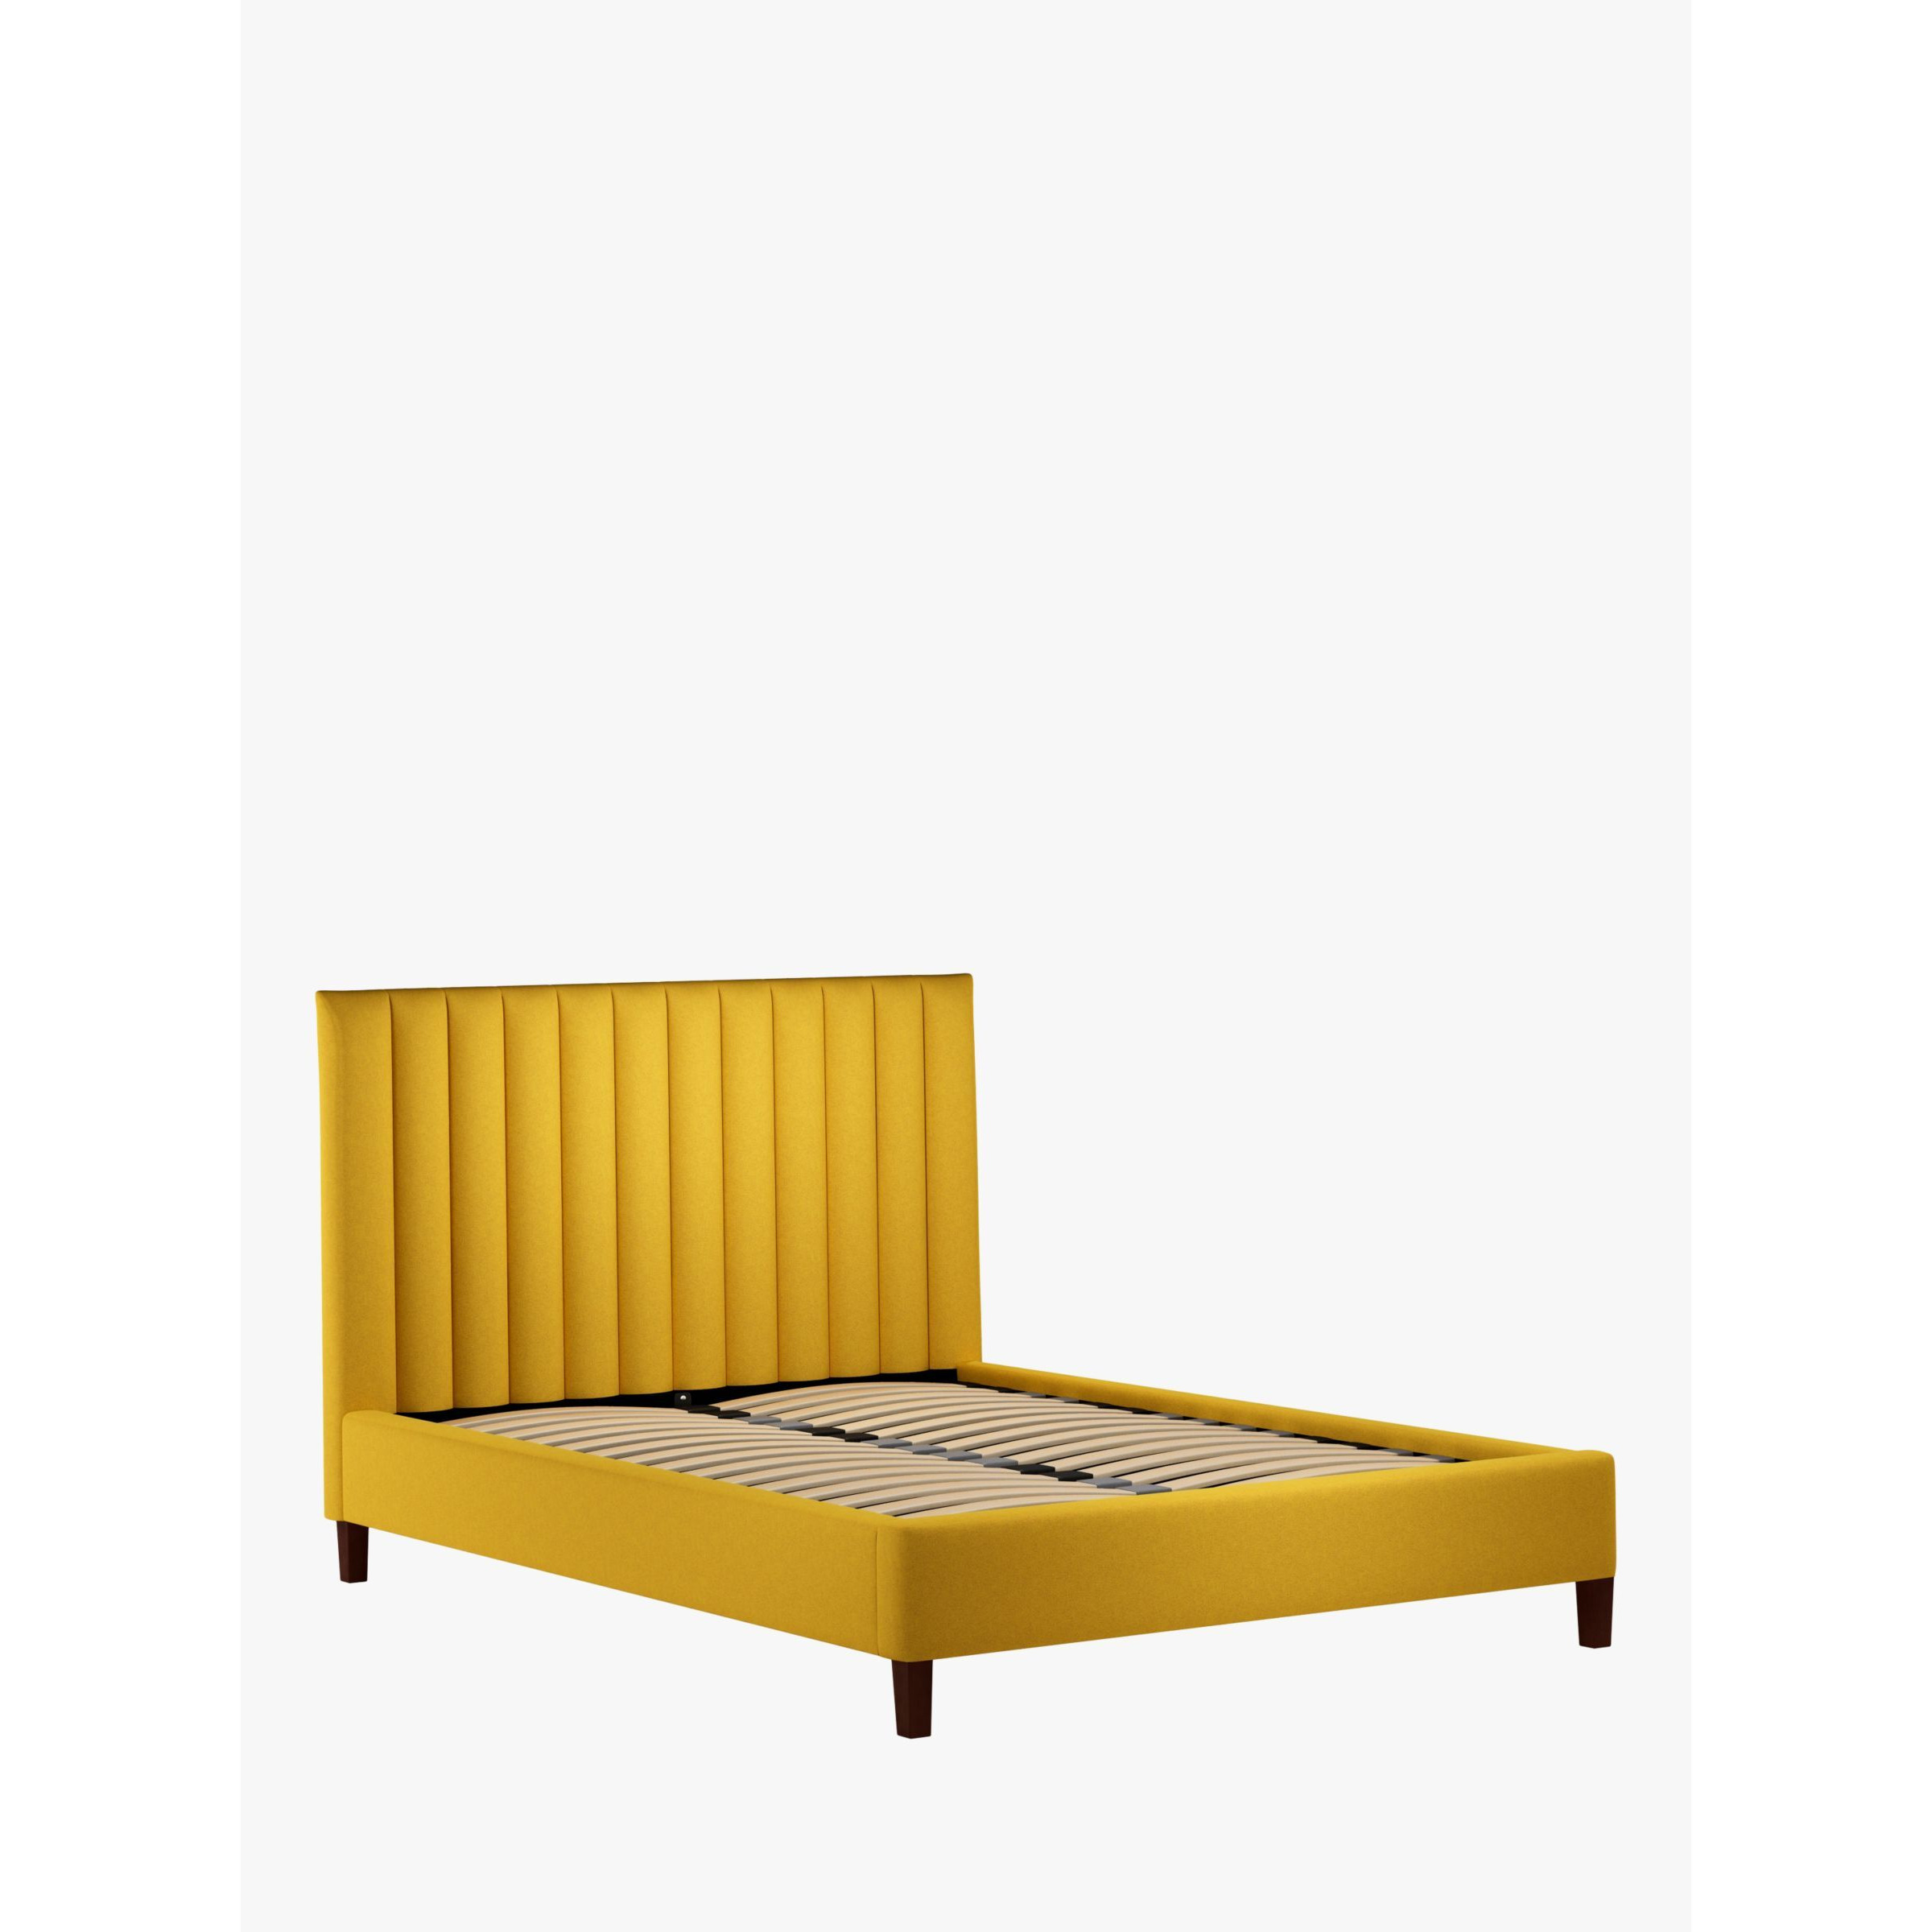 John Lewis Fluted Upholstered Bed Frame, Super King Size - image 1